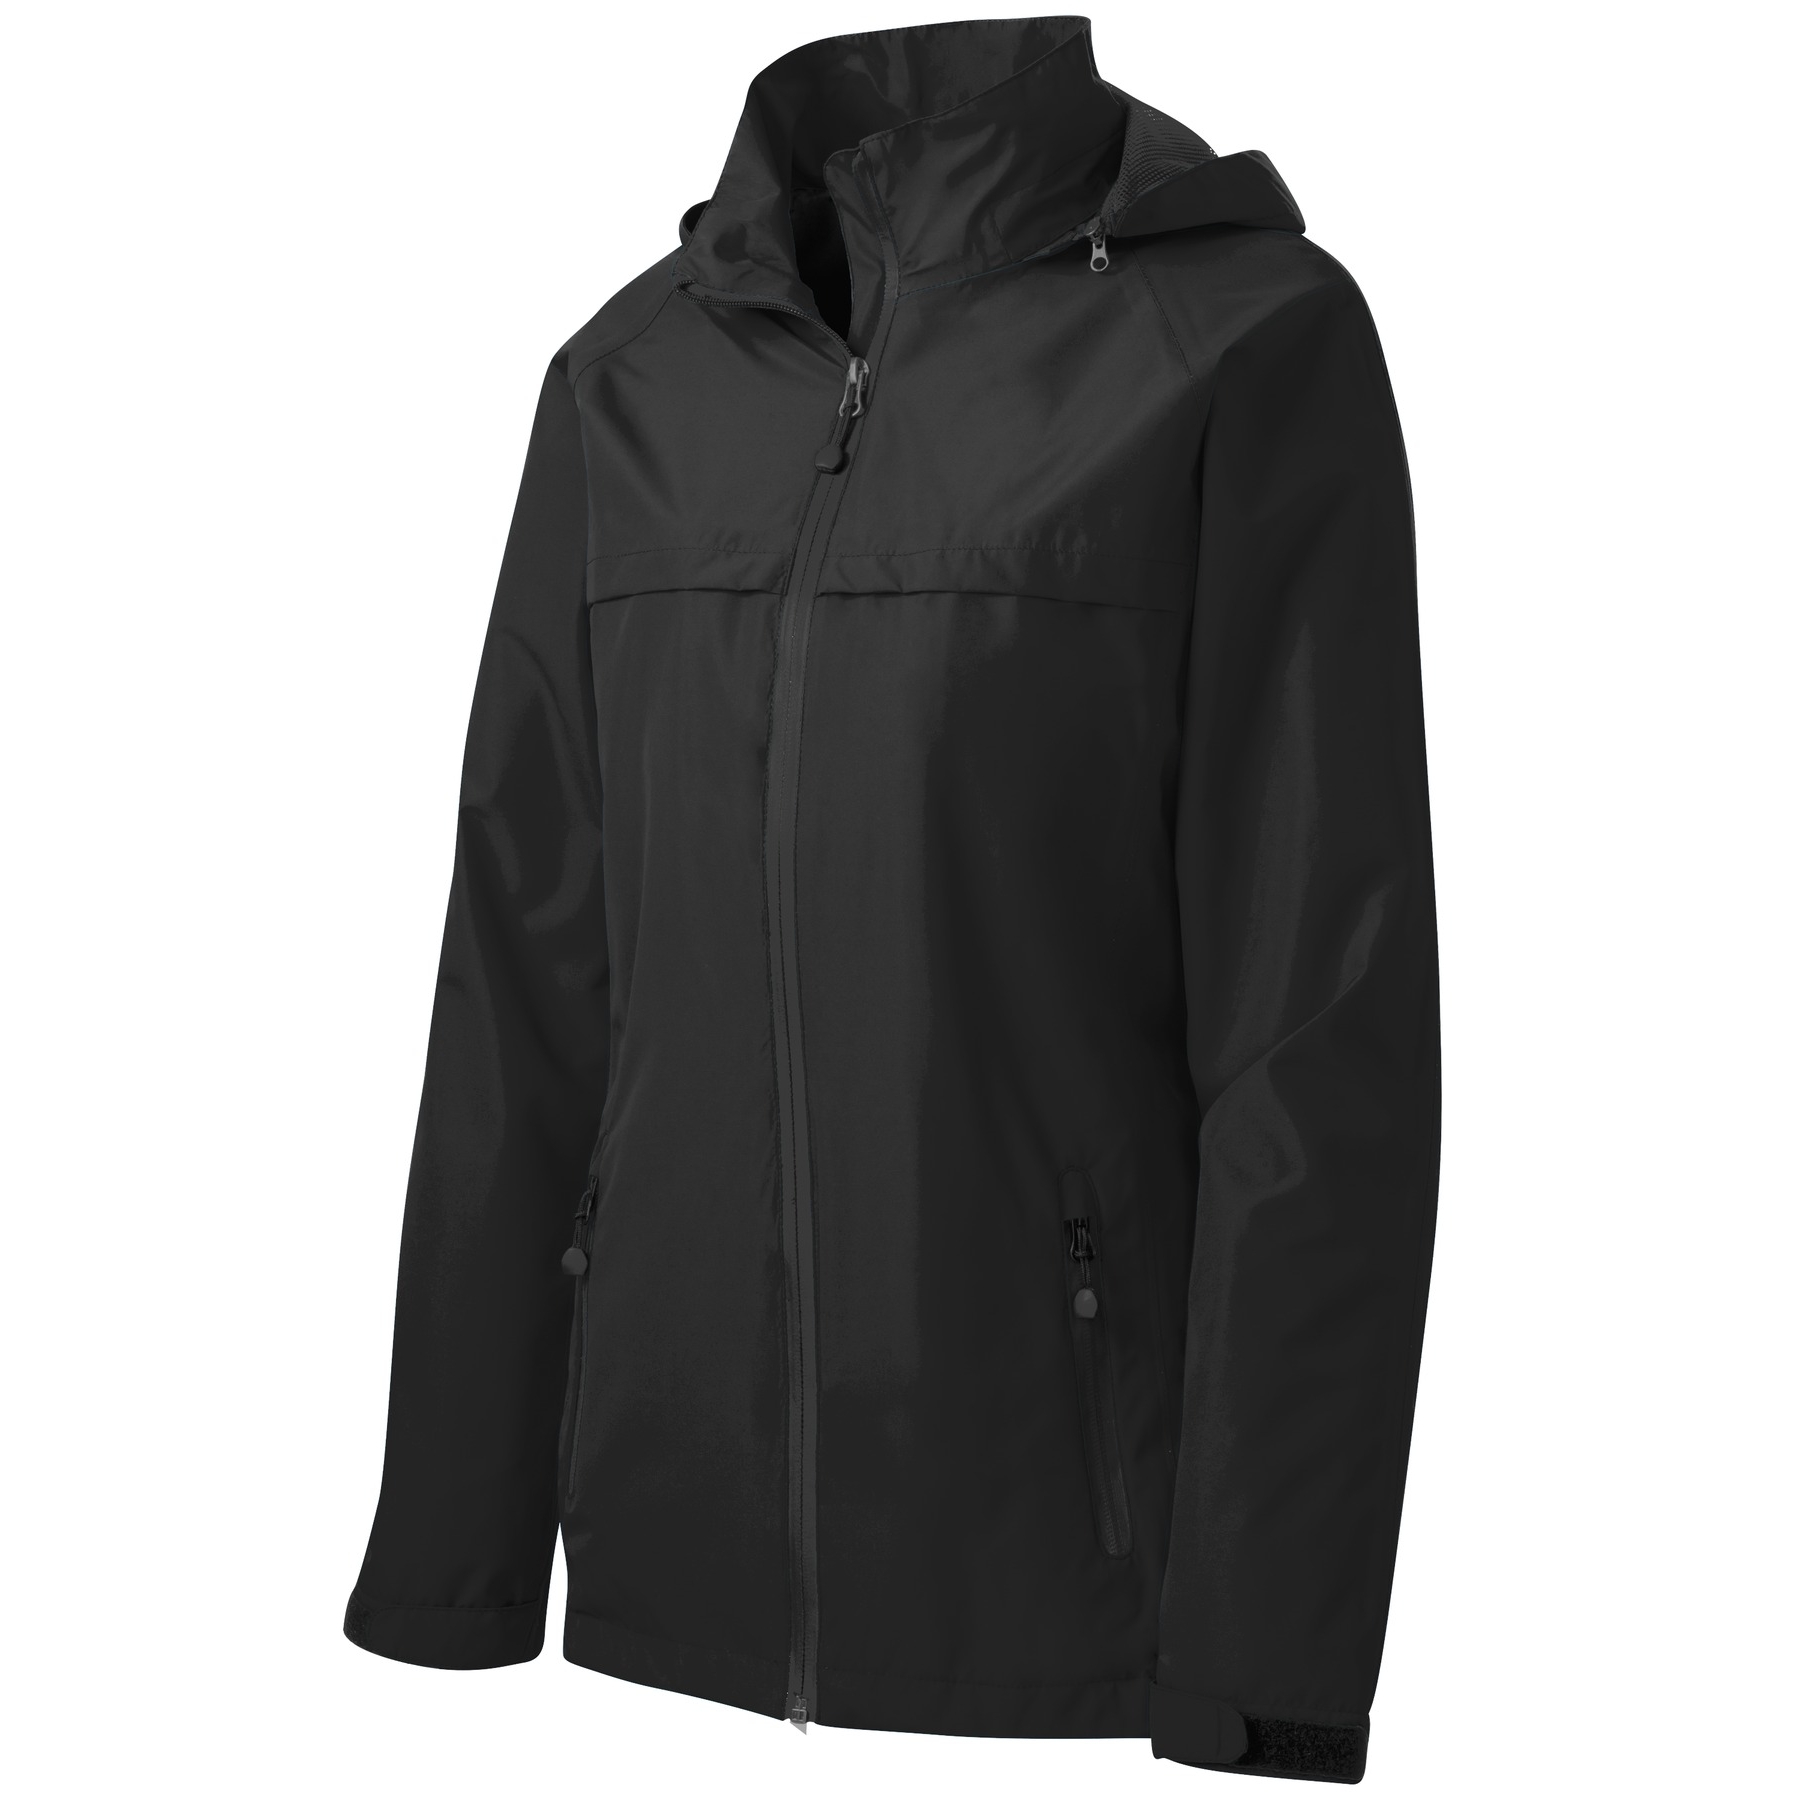 Port Authority Ladies Torrent Waterproof Jacket - L333 - Dark Grey